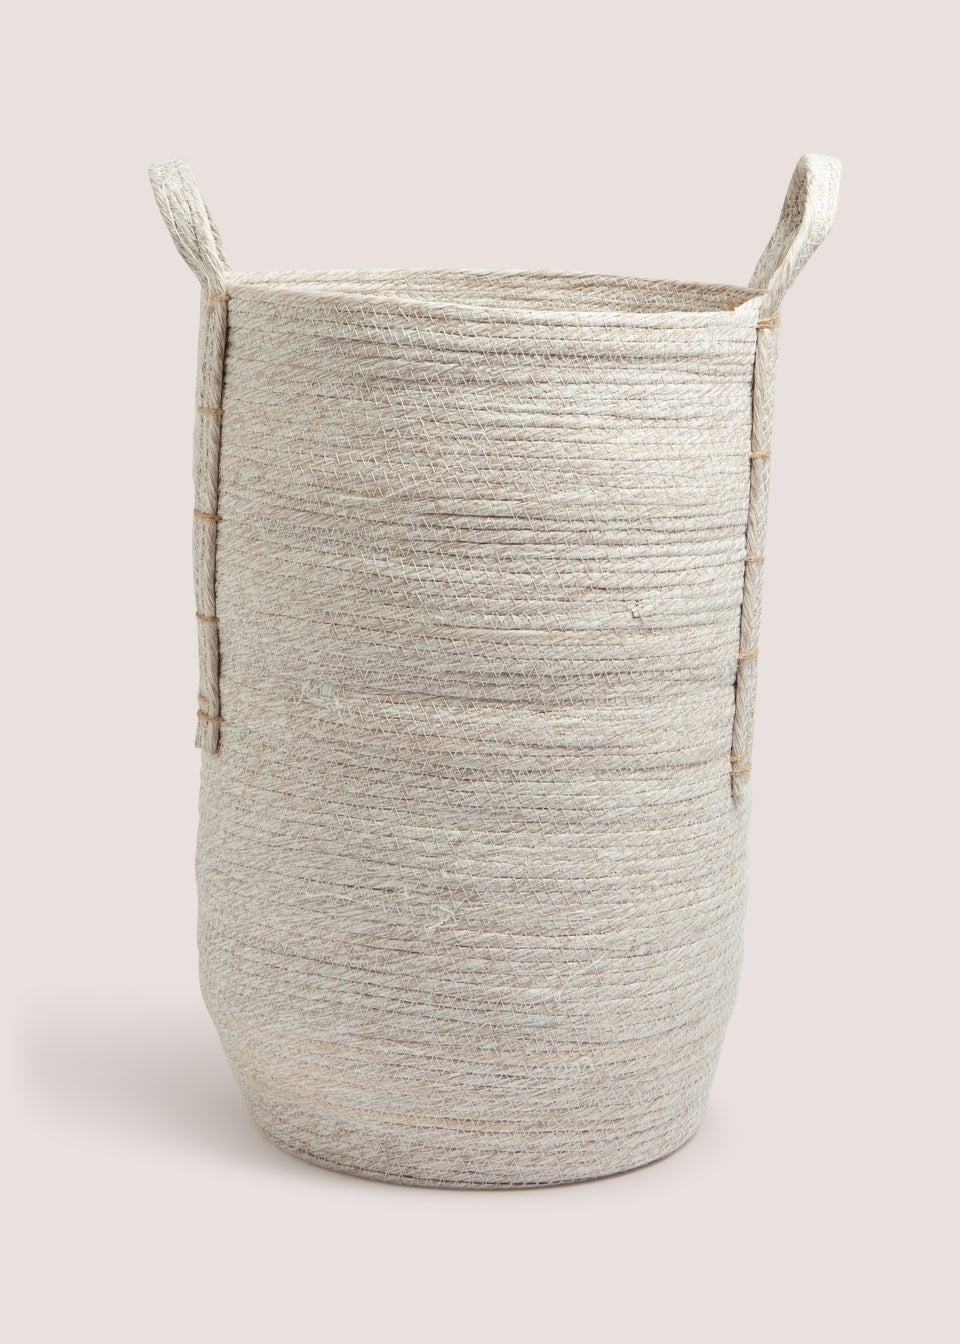 White Wash Laundry Basket (31x31x50cm)